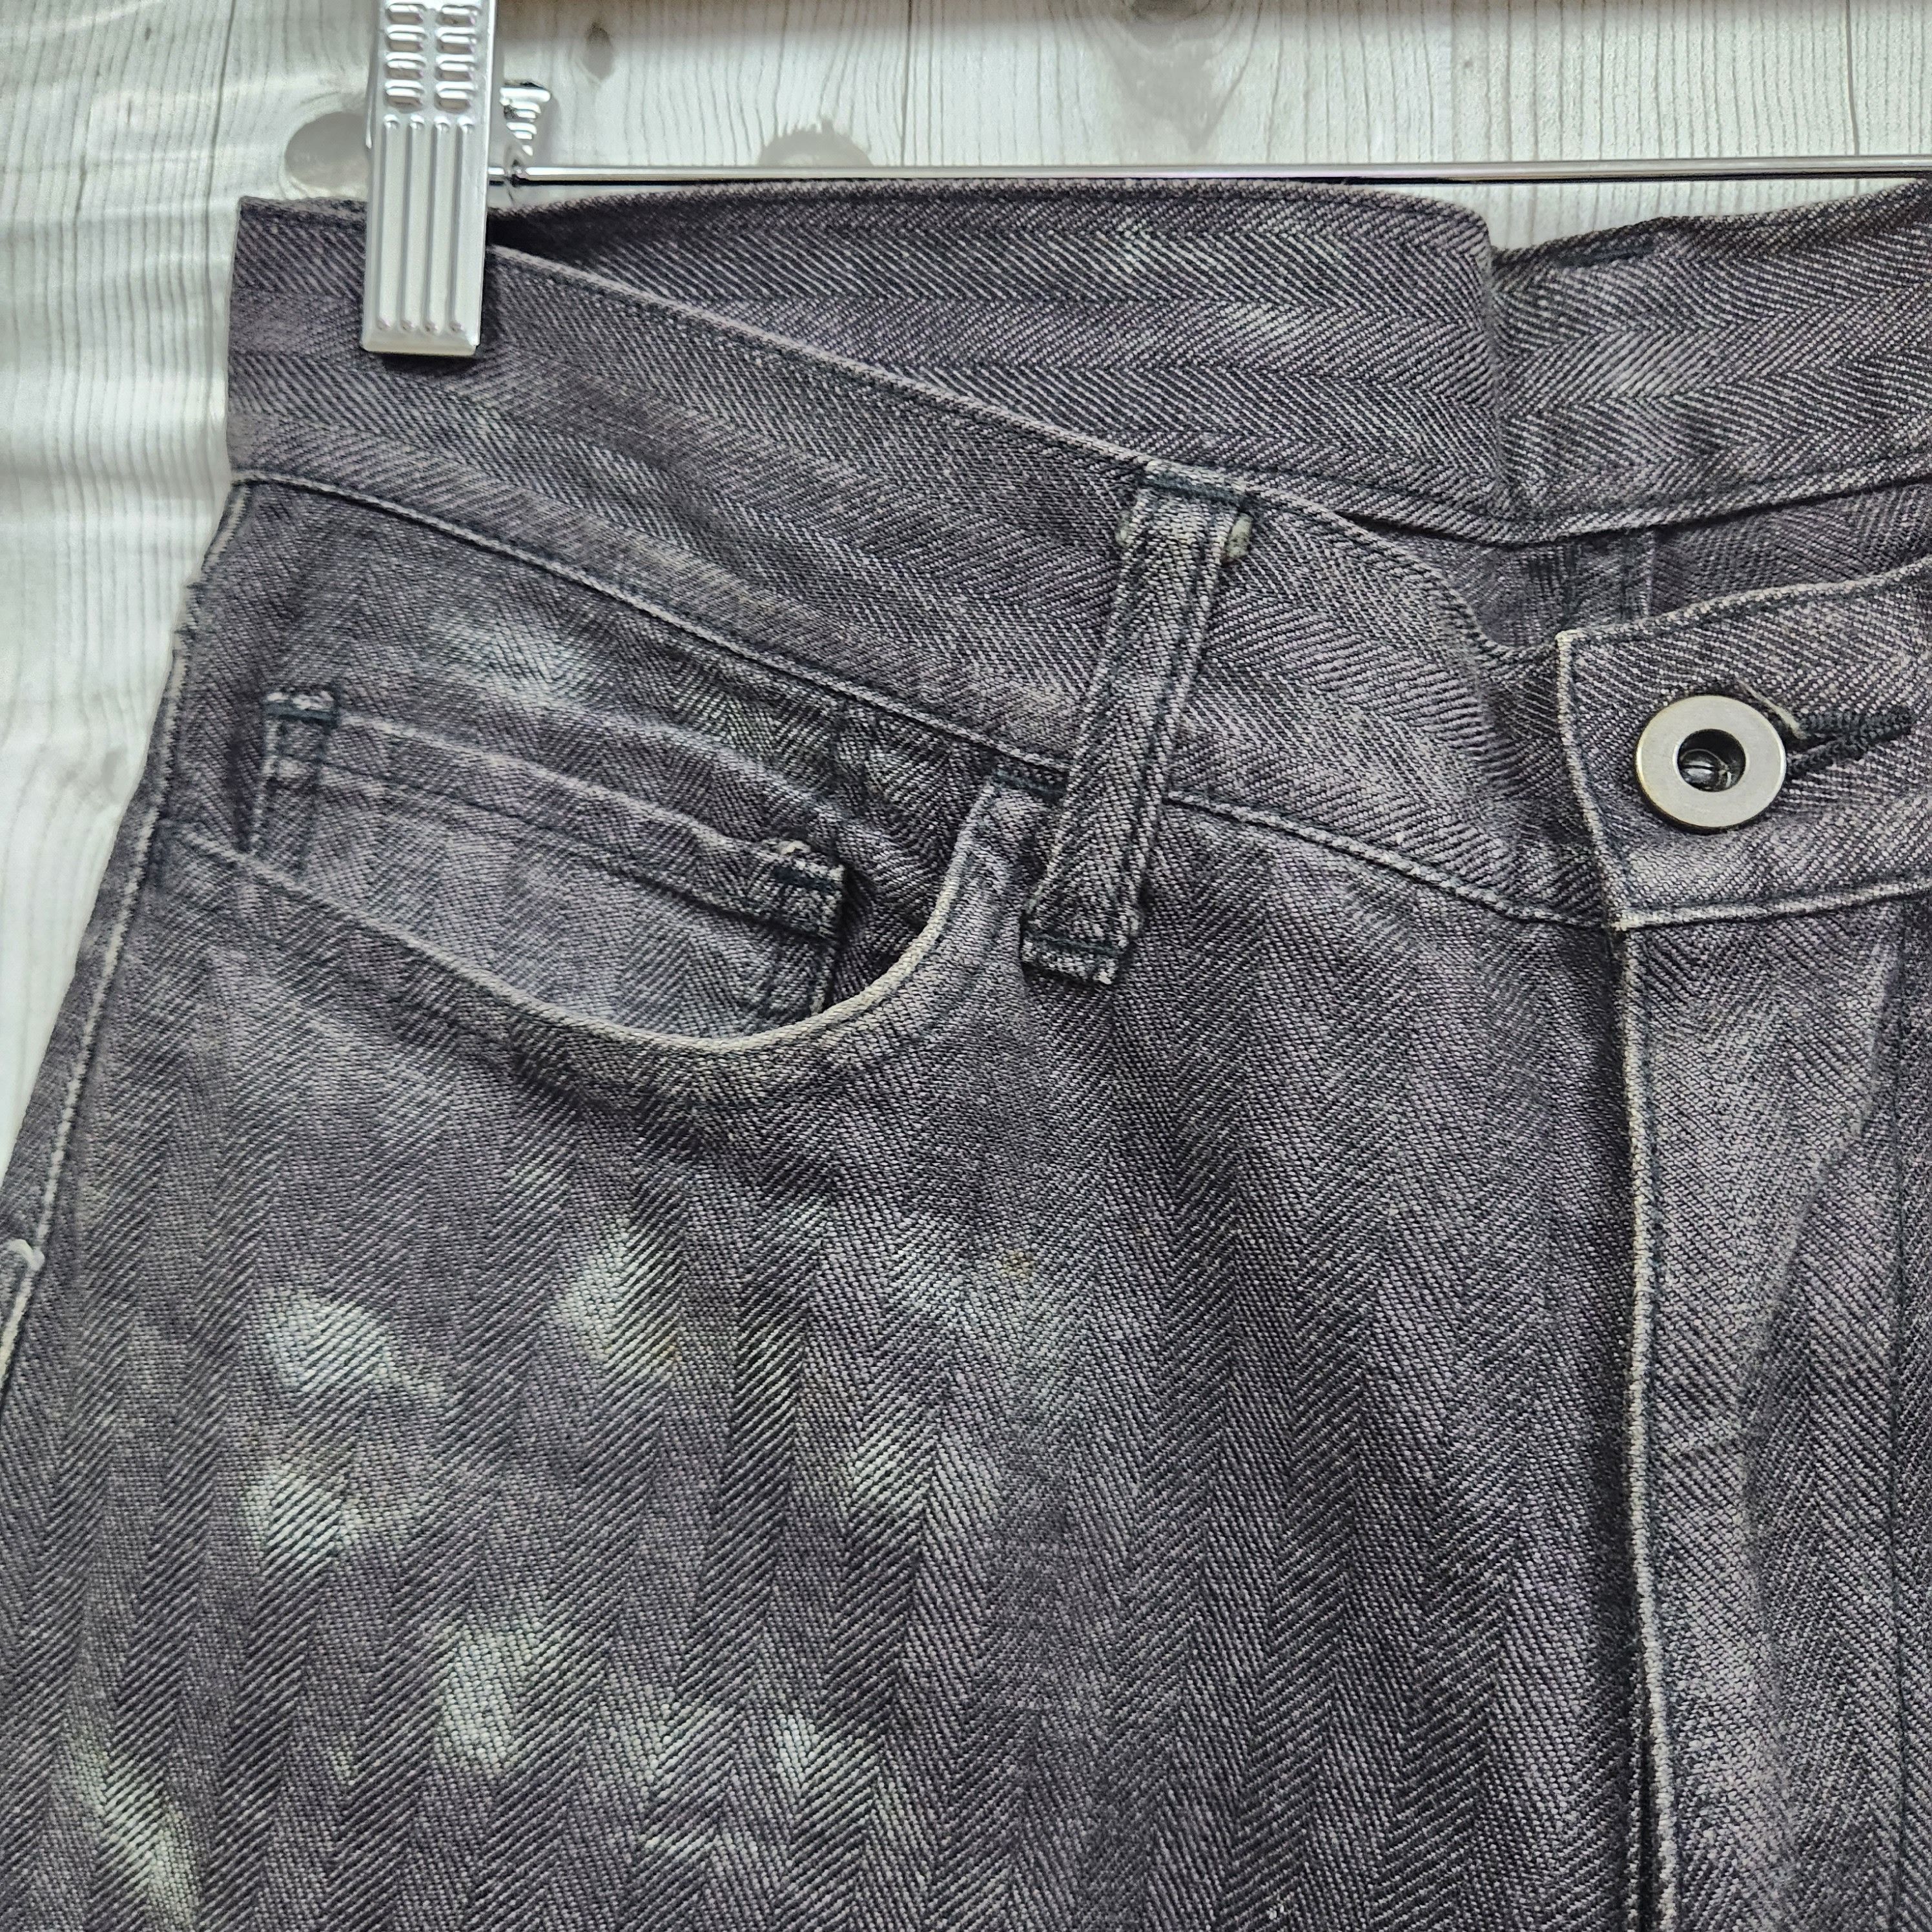 Japanese Brand - Flared Edge Rupert Denim Japan Jeans 70s Style - 3